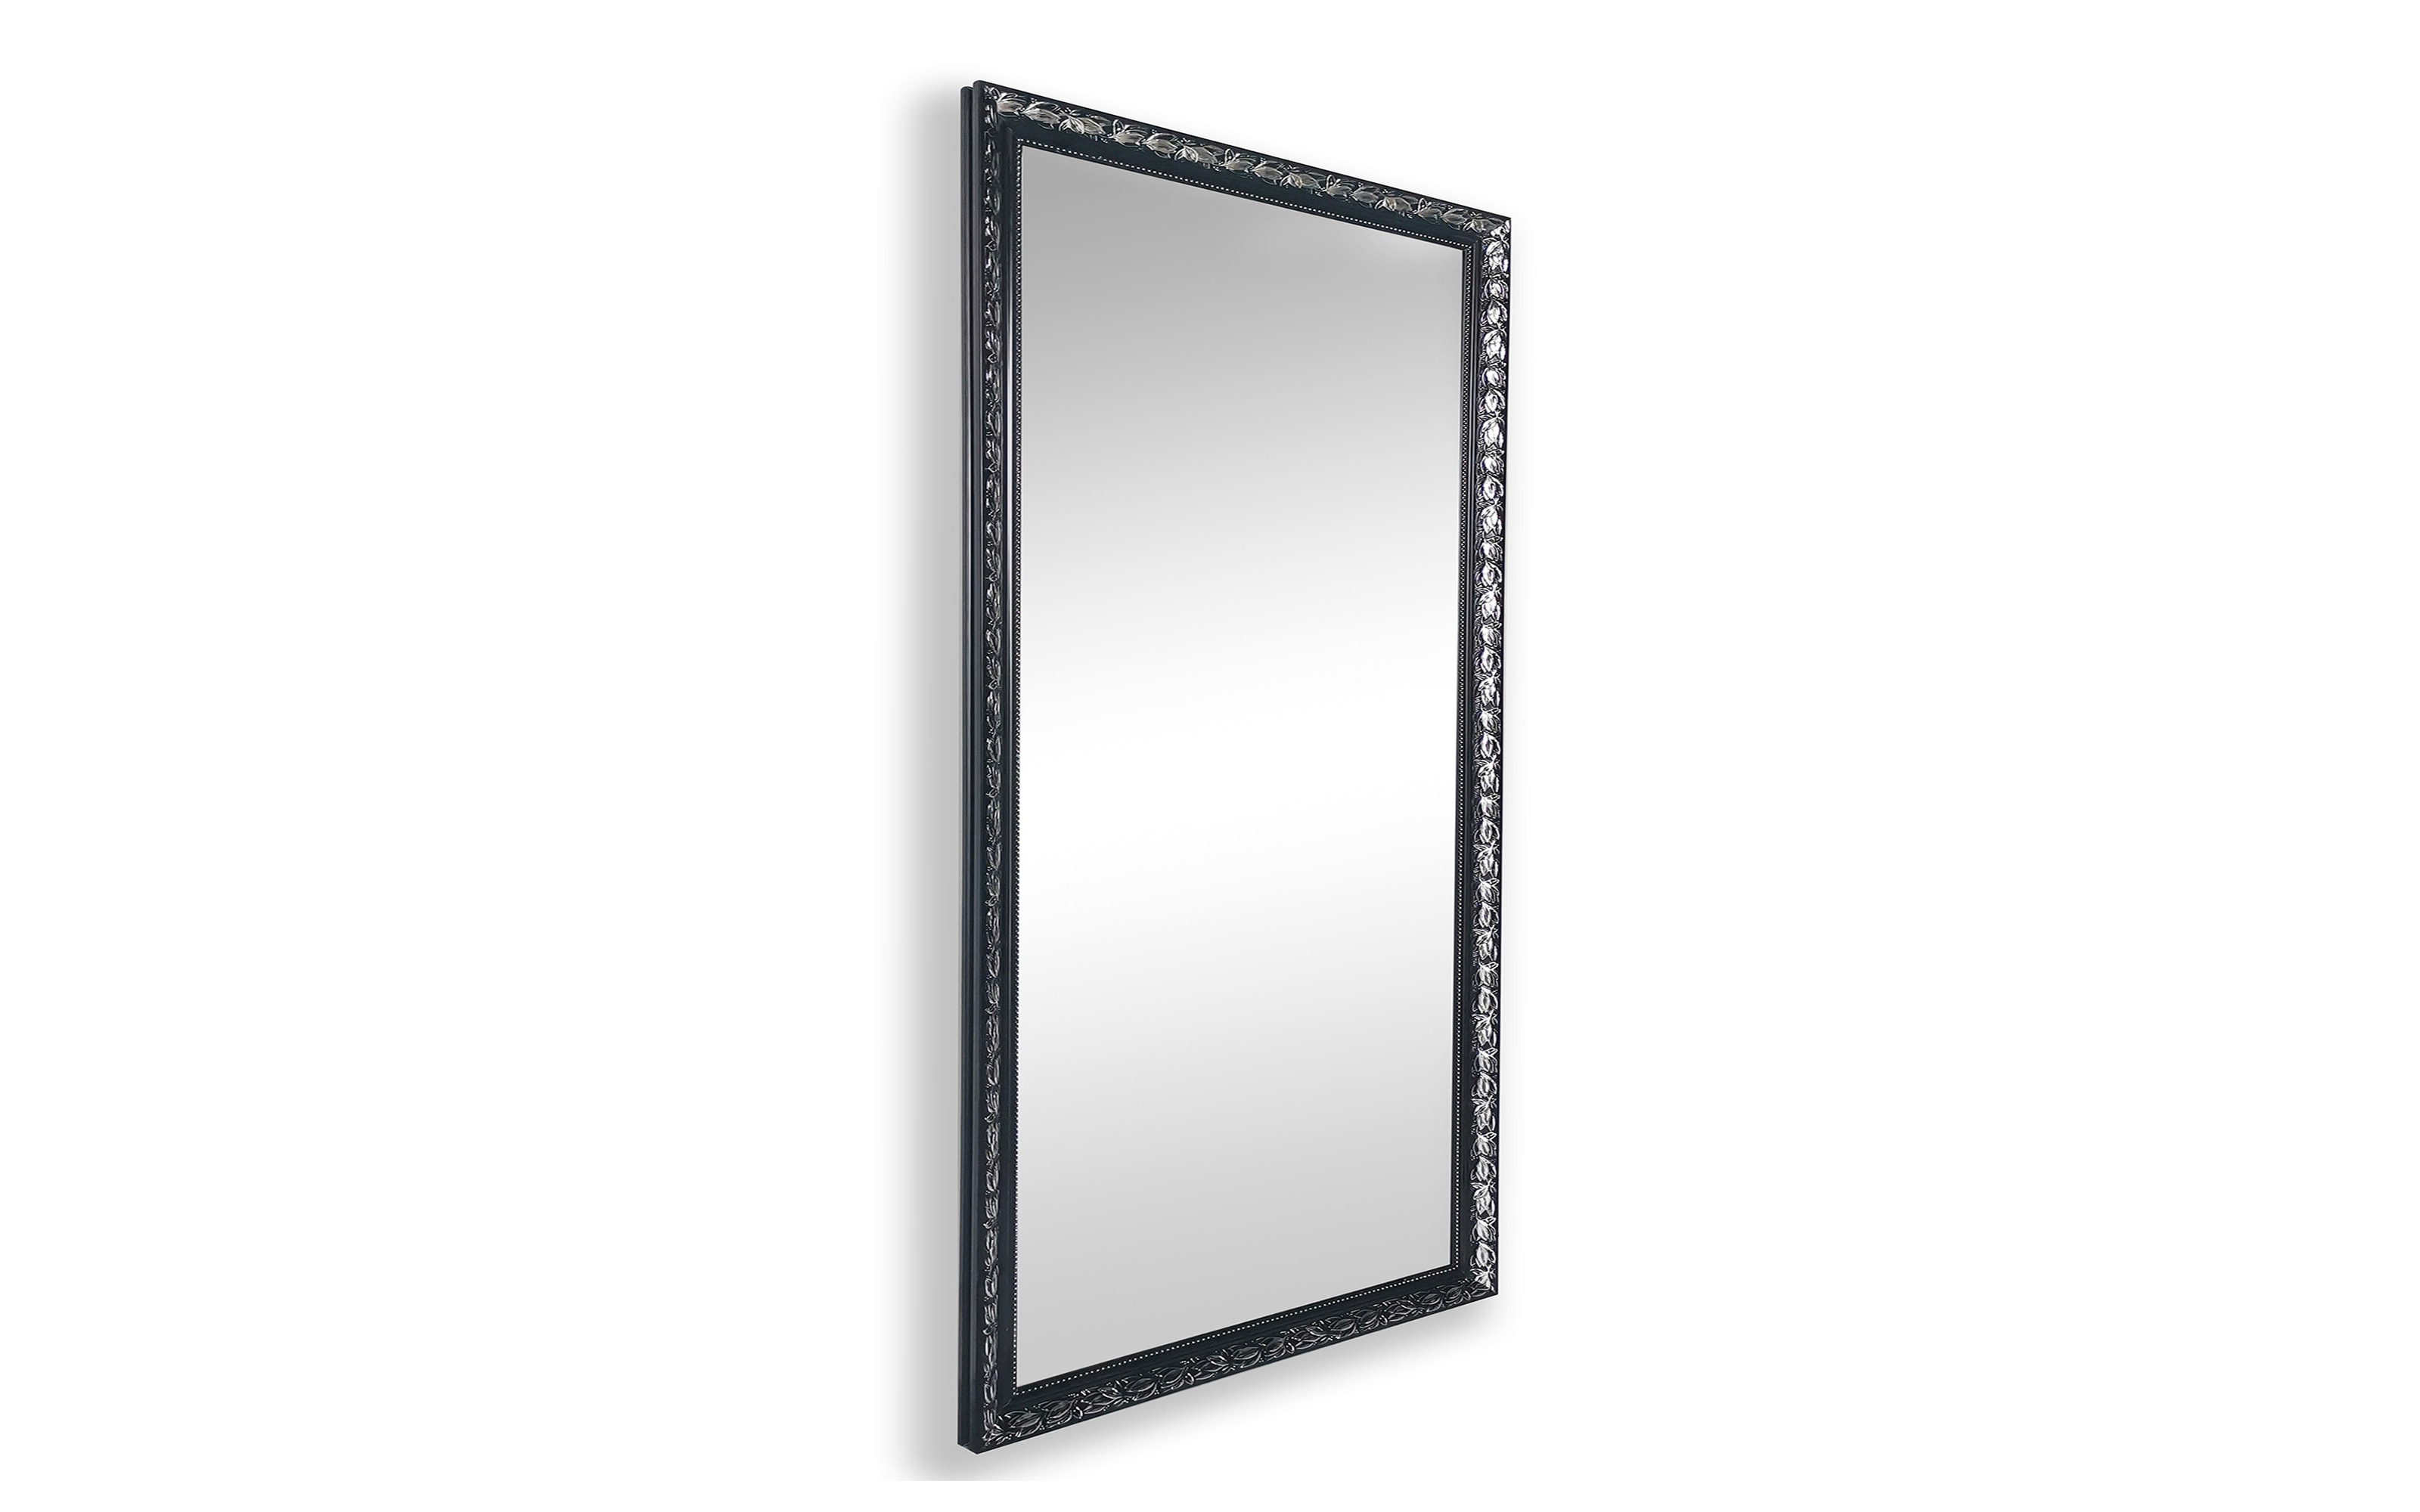 Rahmenspiegel Sonja, schwarz/silberfarbig, 55 x 70 cm